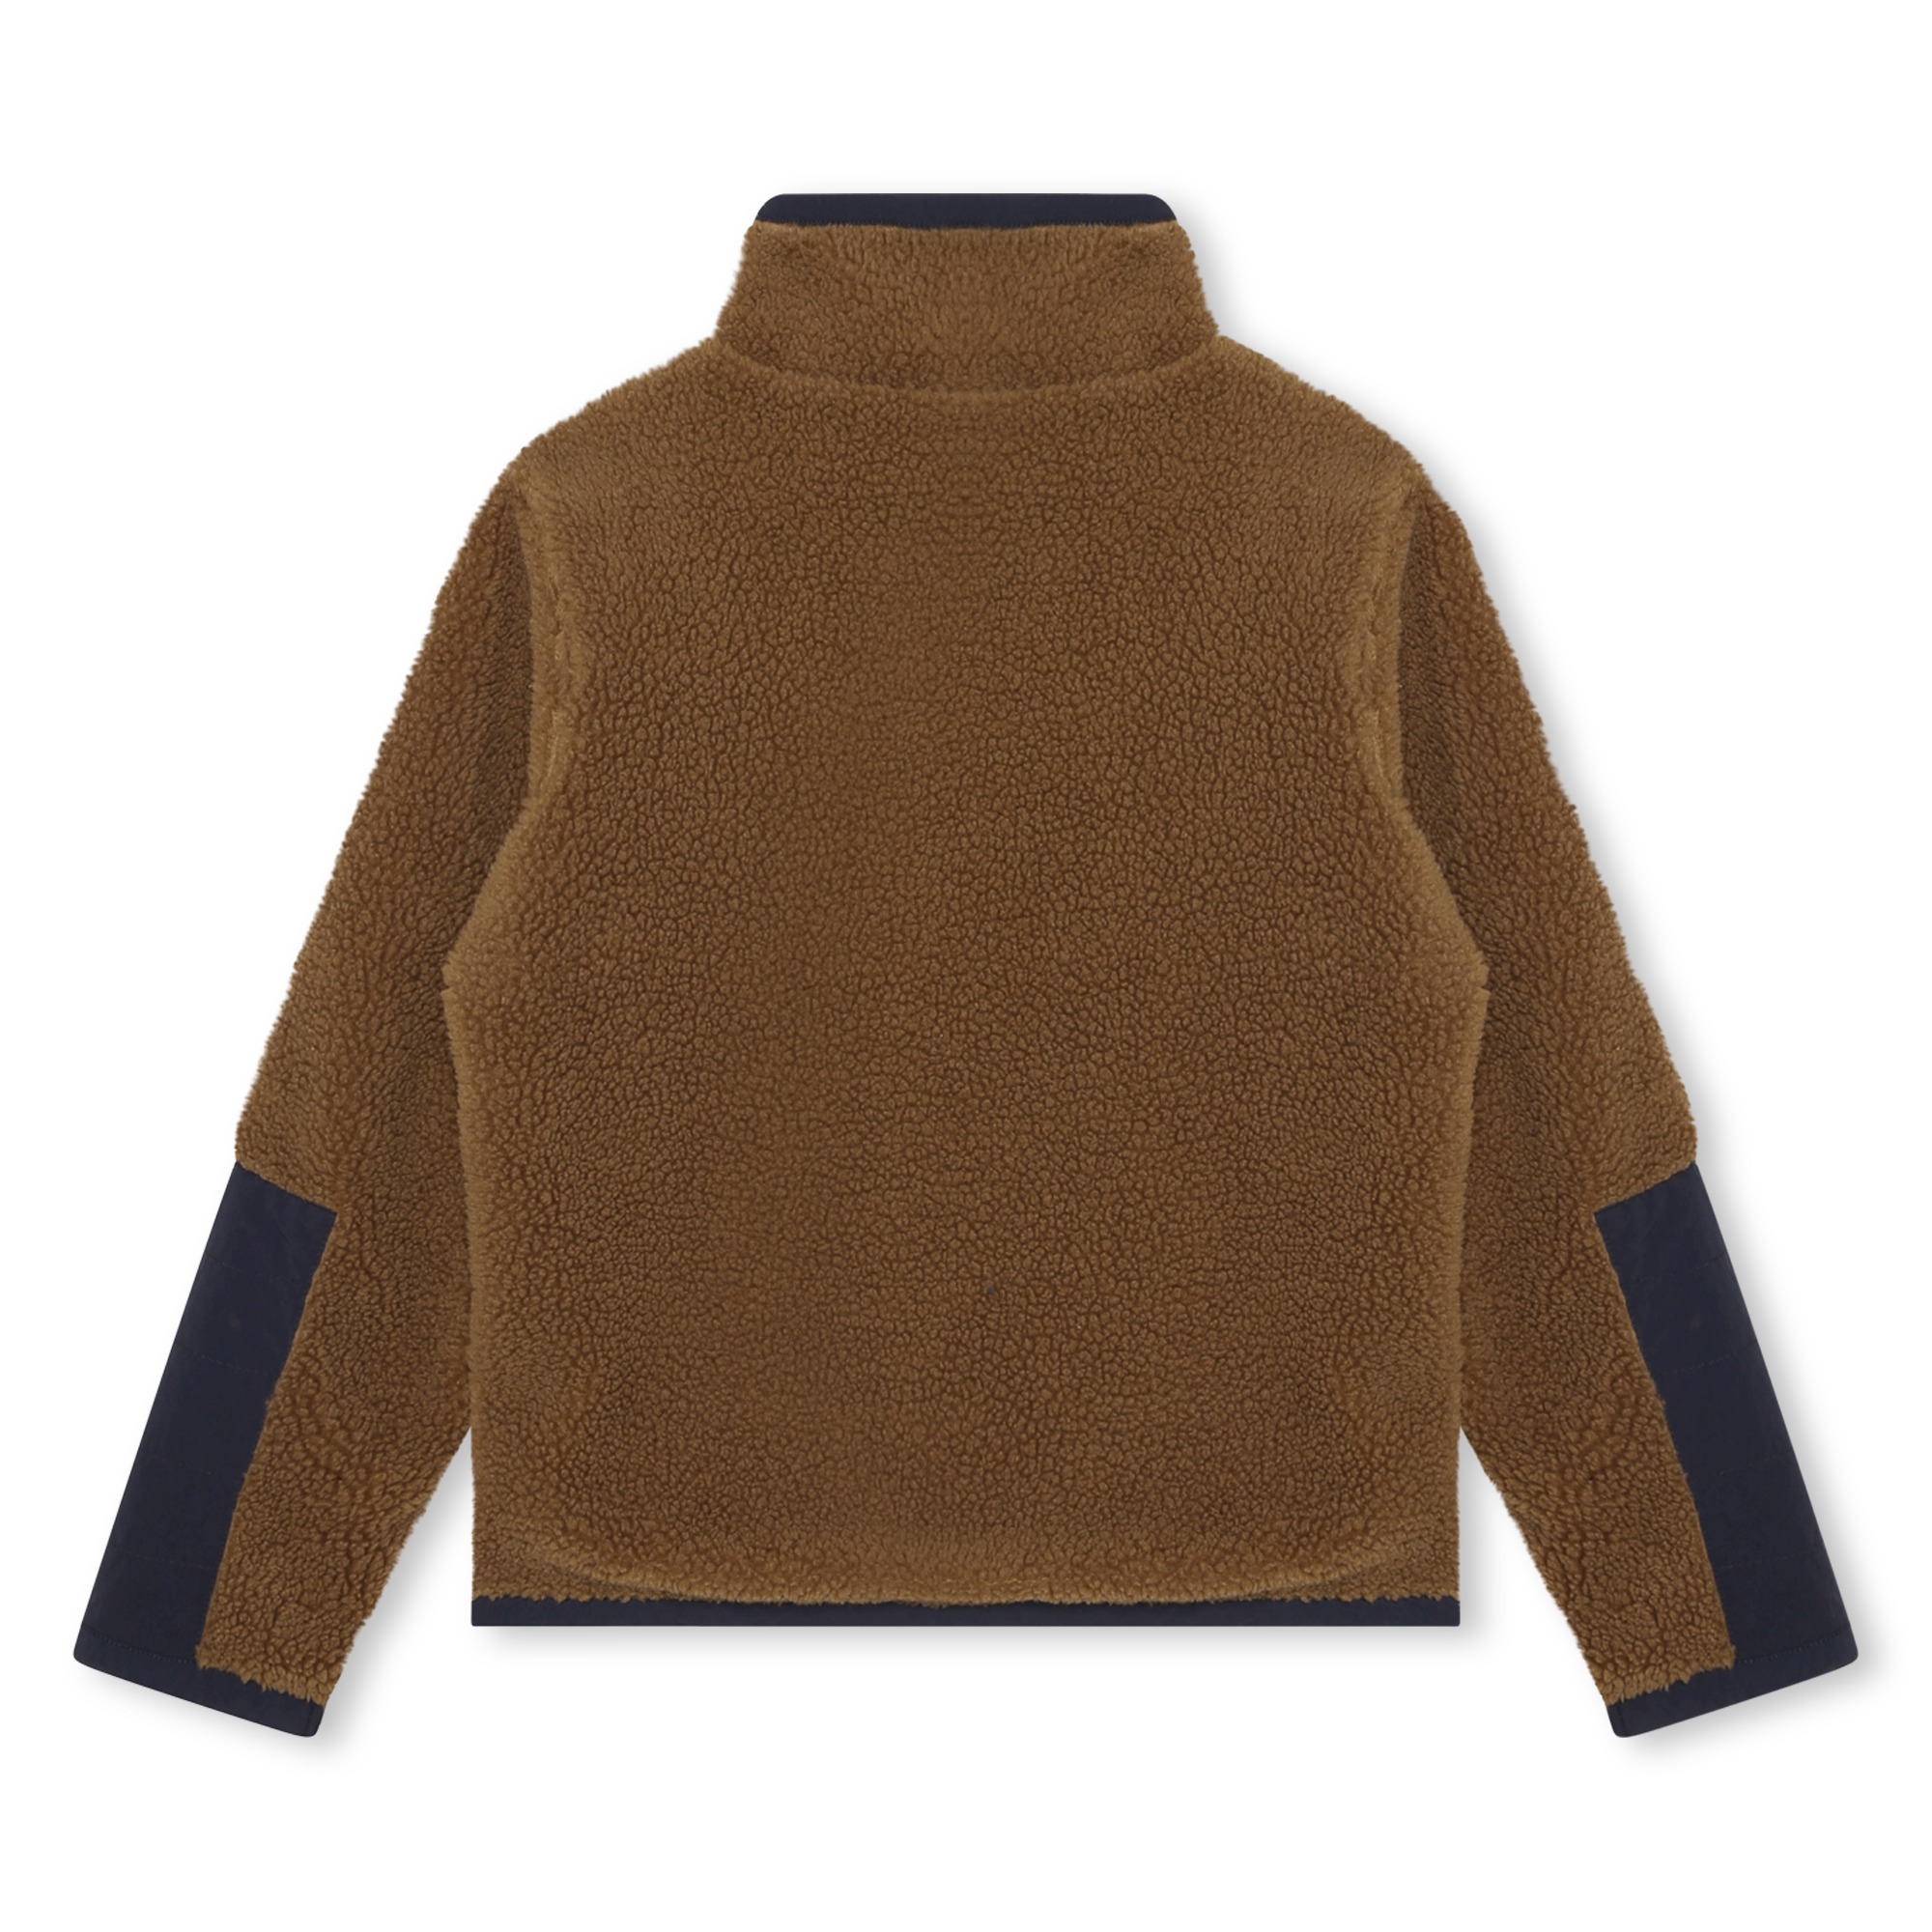 Geschmeidiger Sweater mit Zip TIMBERLAND Für JUNGE